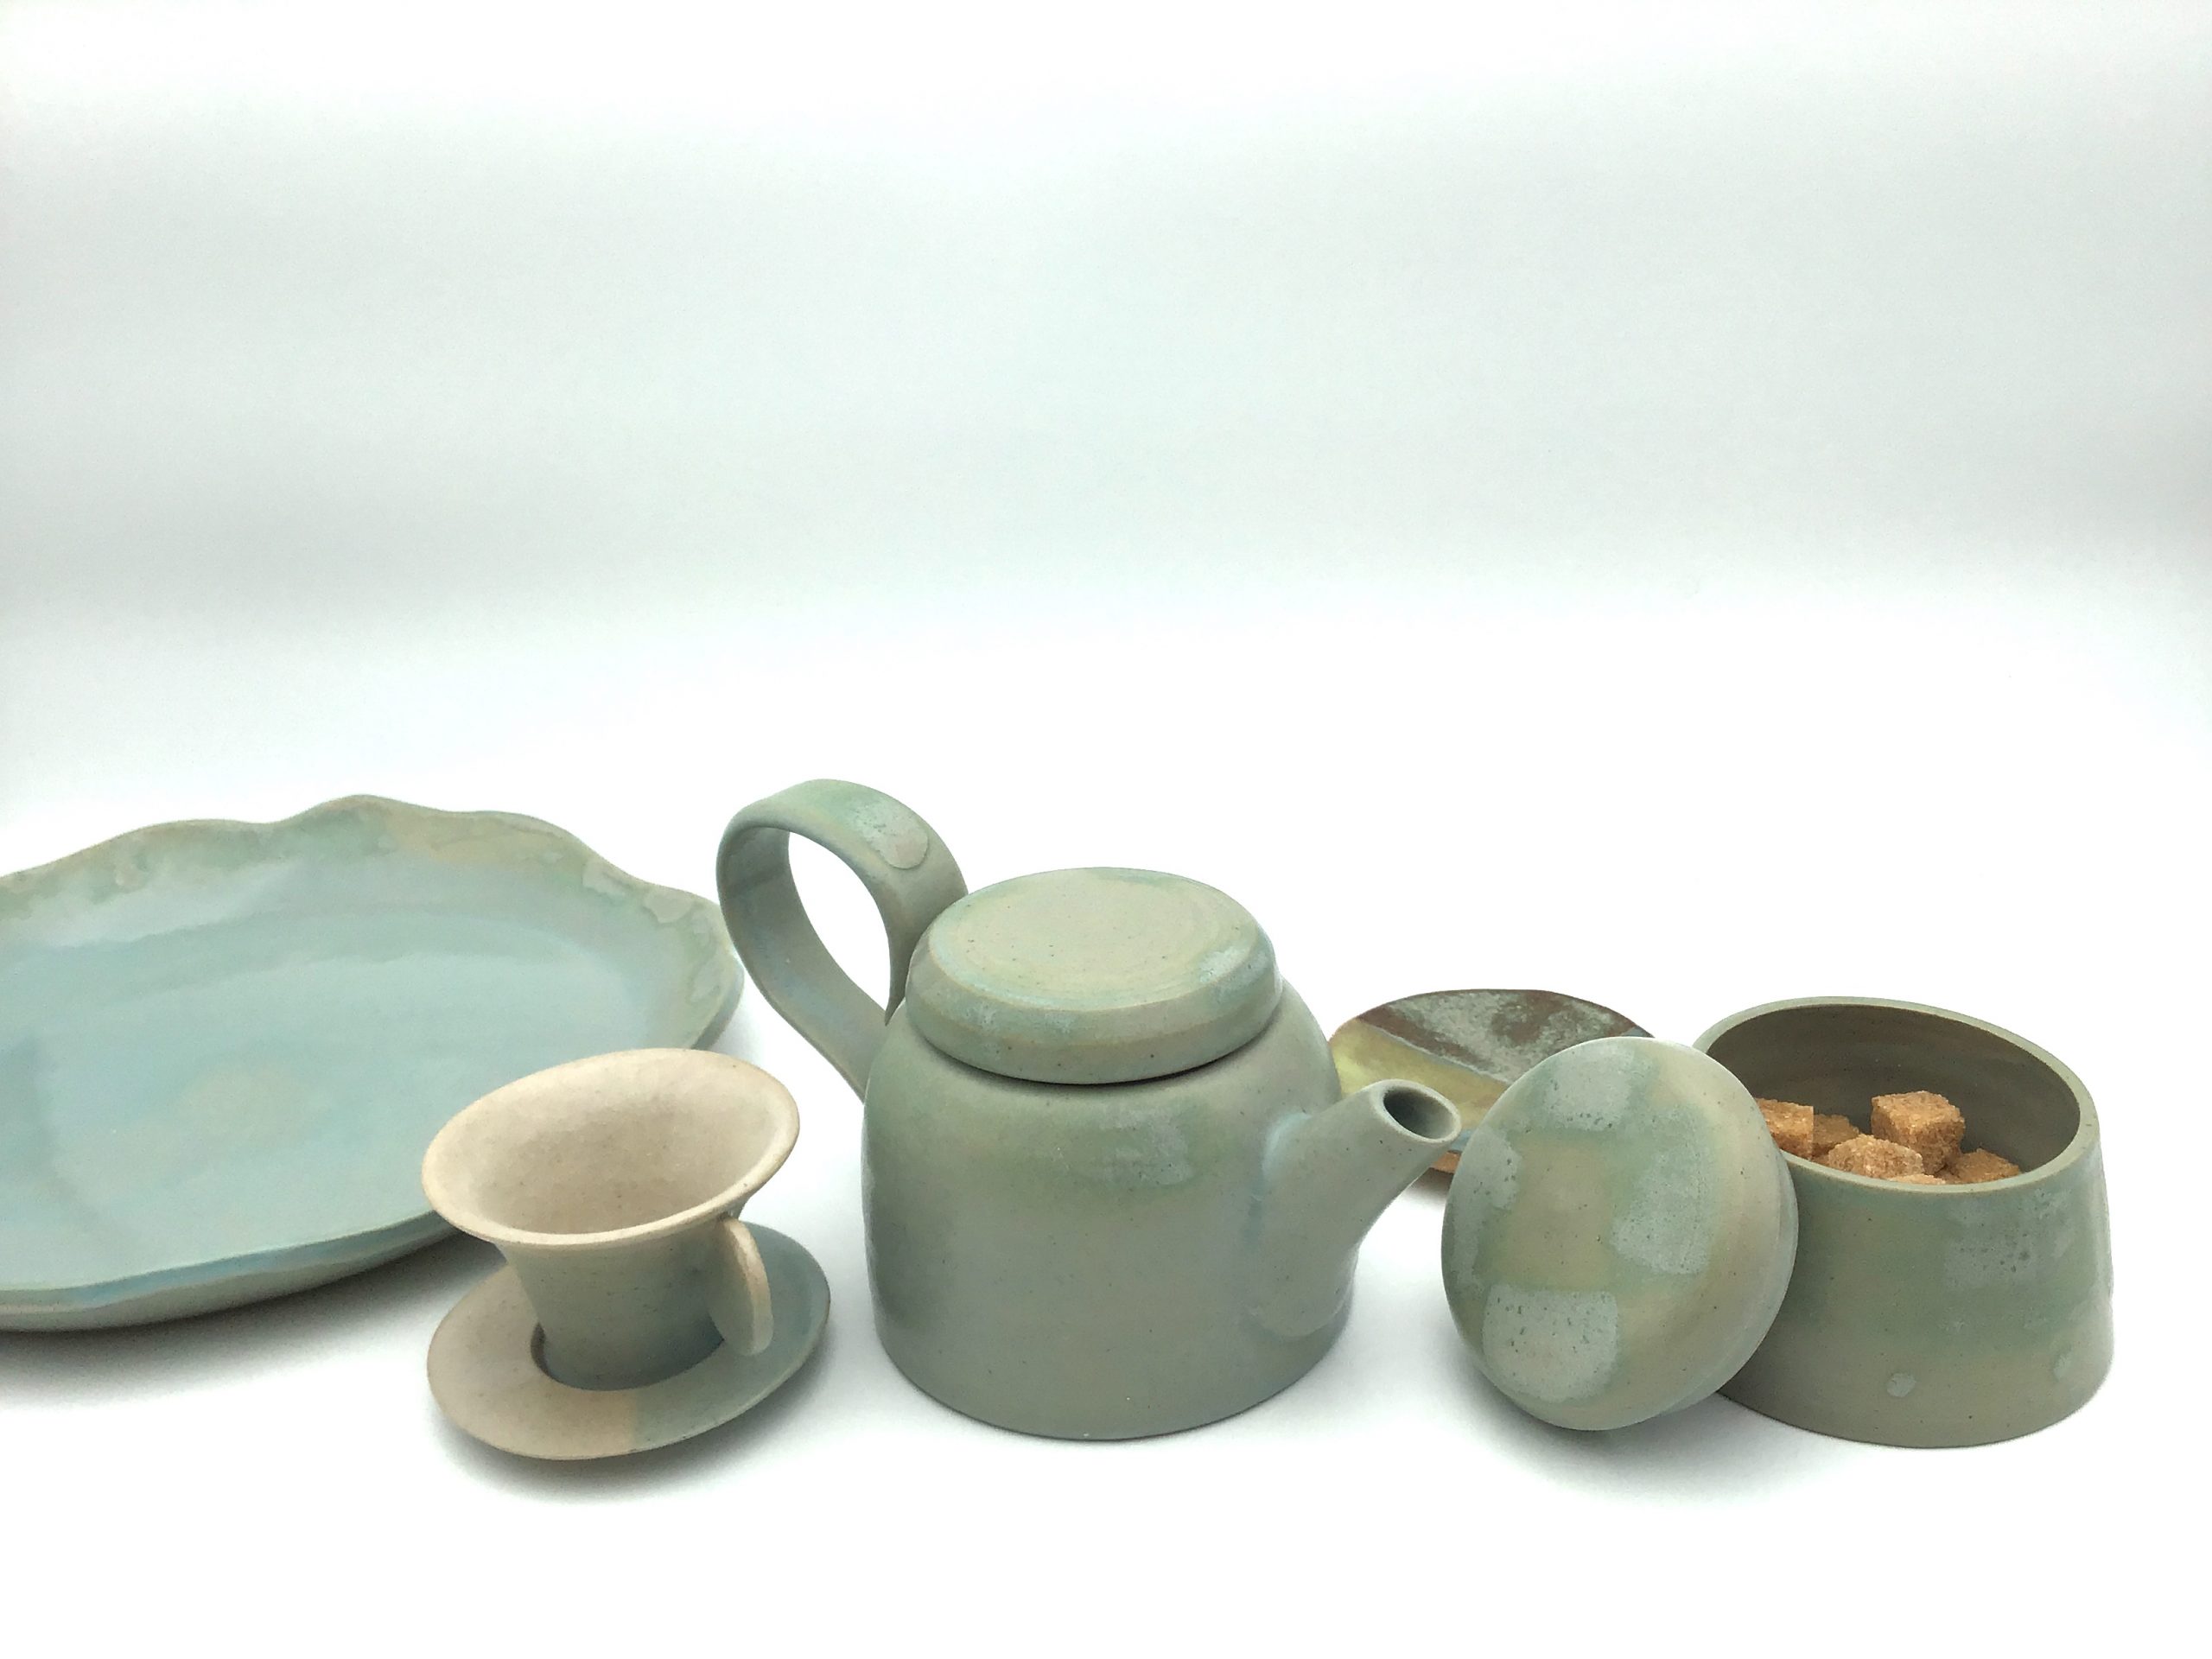 Céramiques artisanales, de couleur bleu pale : théière, tasse et pot à sucre.